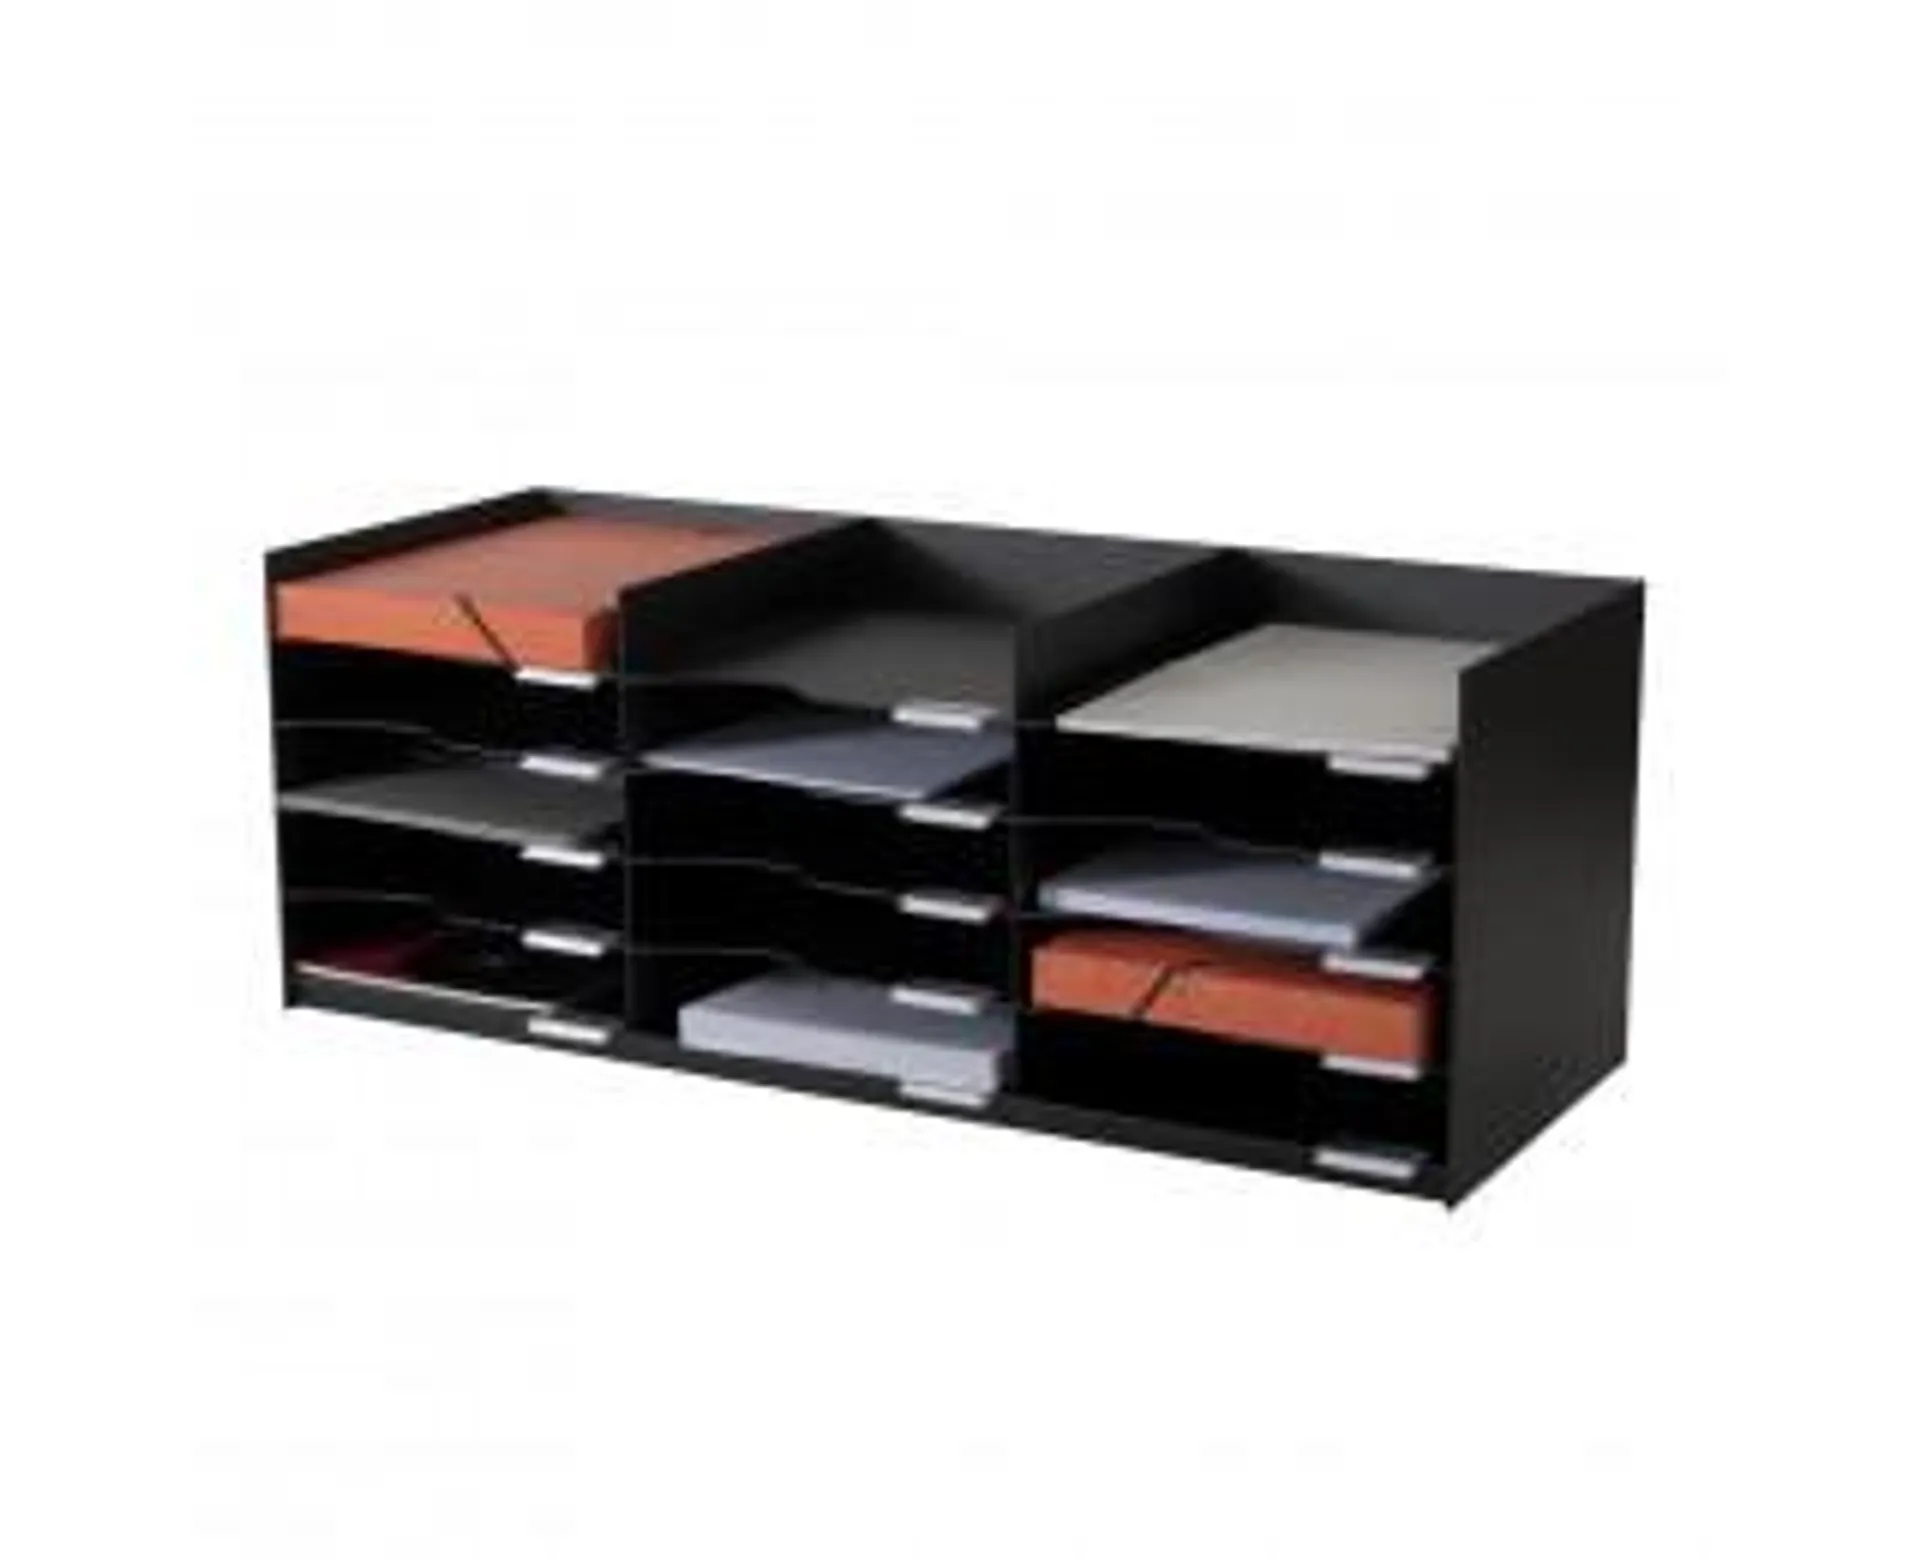 Bloc à cases - Compatible avec l'armoire EASYOFFICE - 15 cases 24x32 - Noir